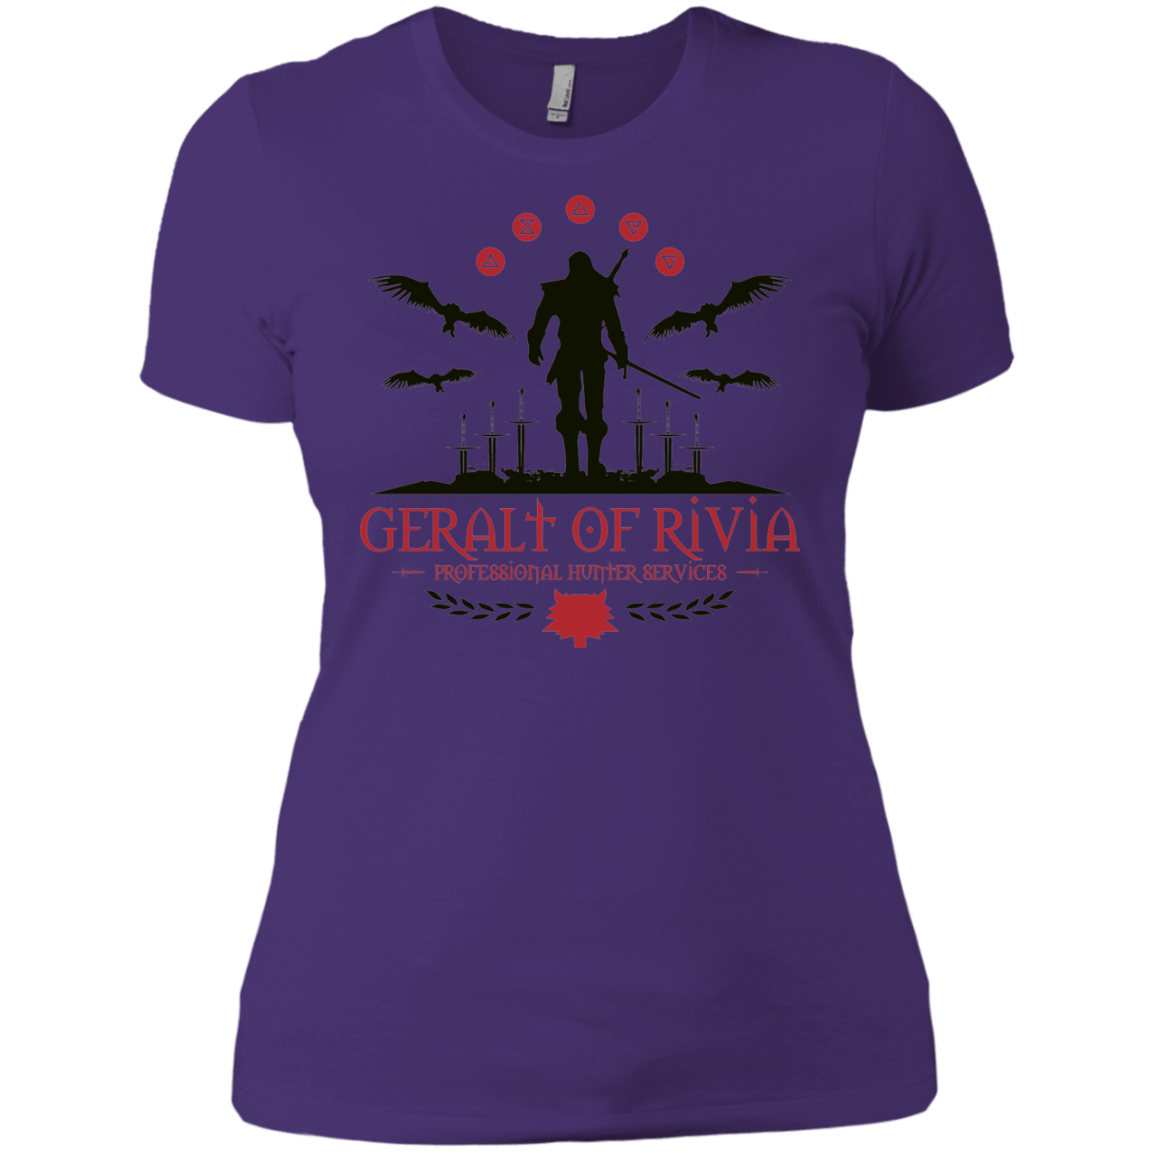 T-Shirts Purple Rush/ / X-Small The Witcher 3 Wild Hunt Women's Premium T-Shirt